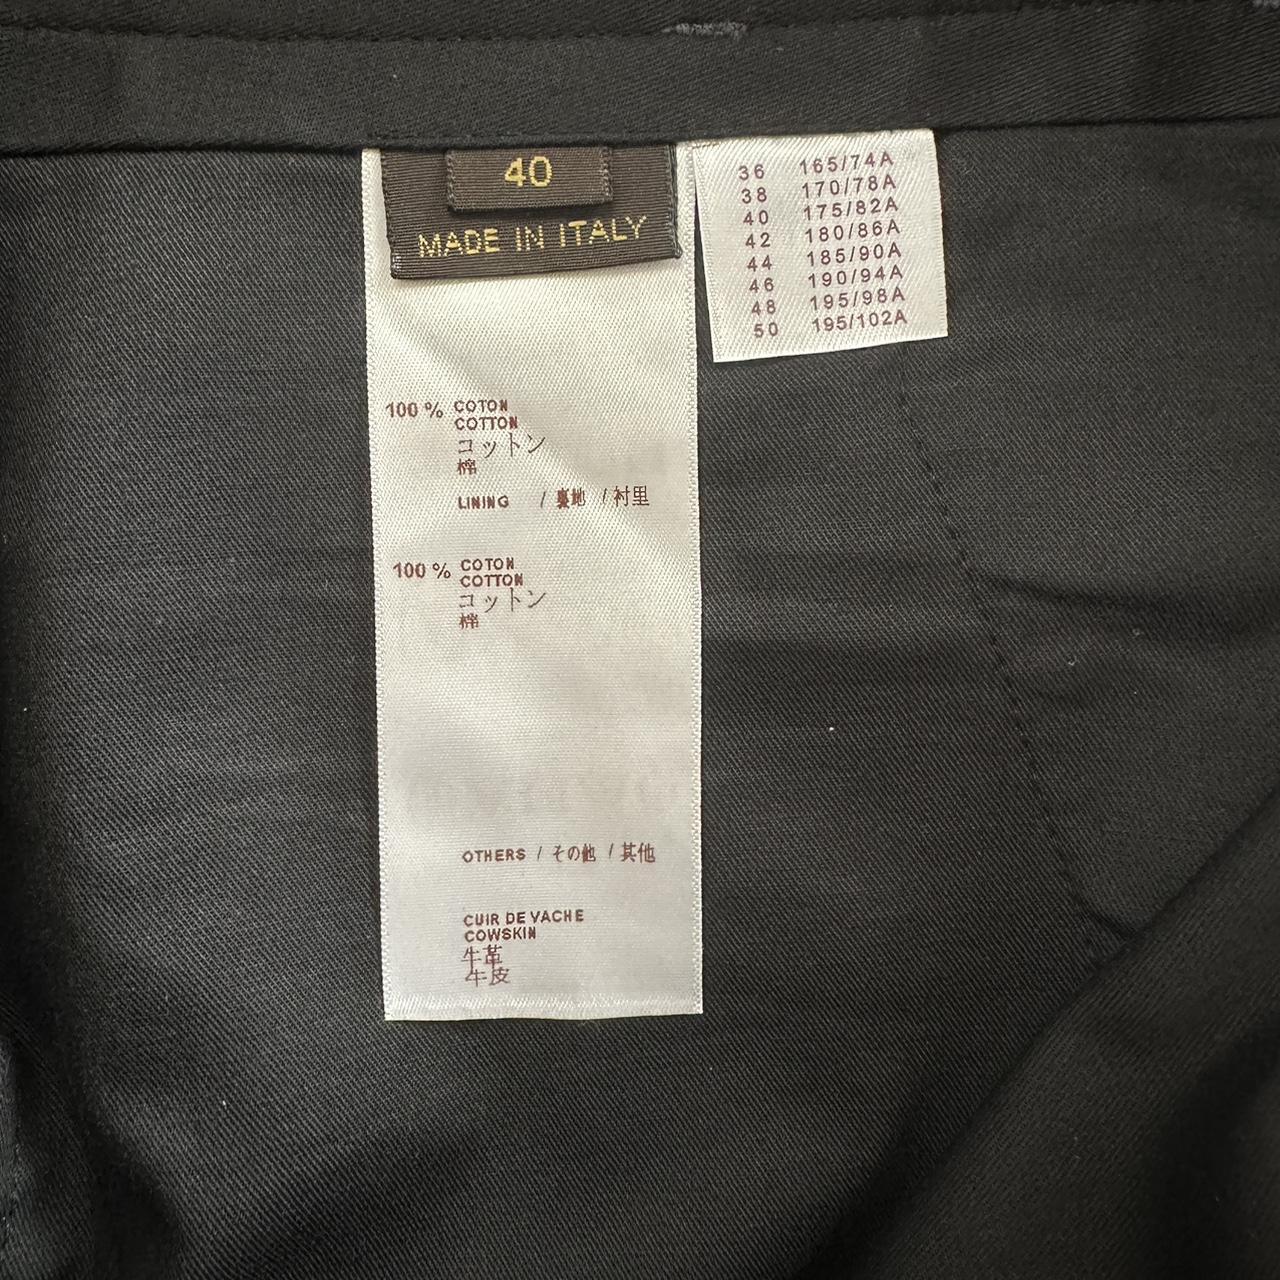 Louis Vuitton dress pants Brand new never worn - Depop